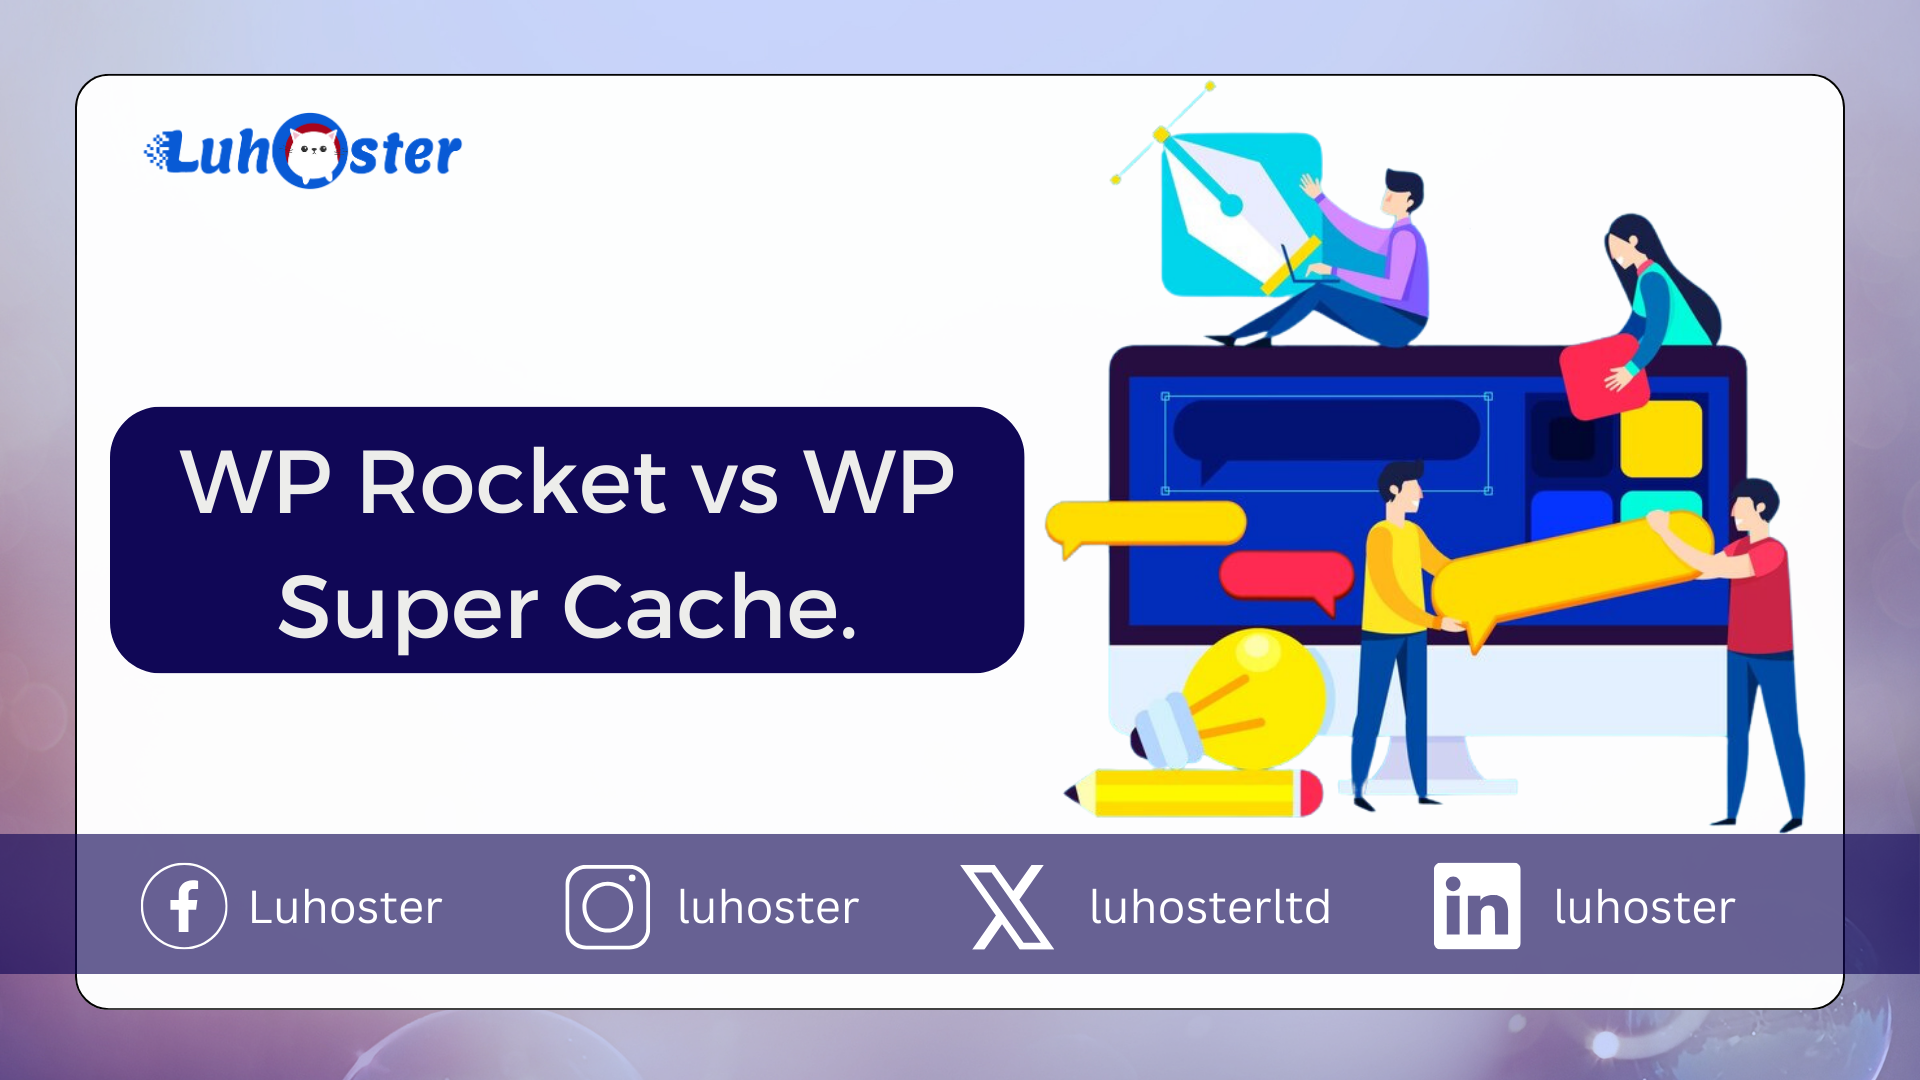 WP Rocket vs WP Super Cache.